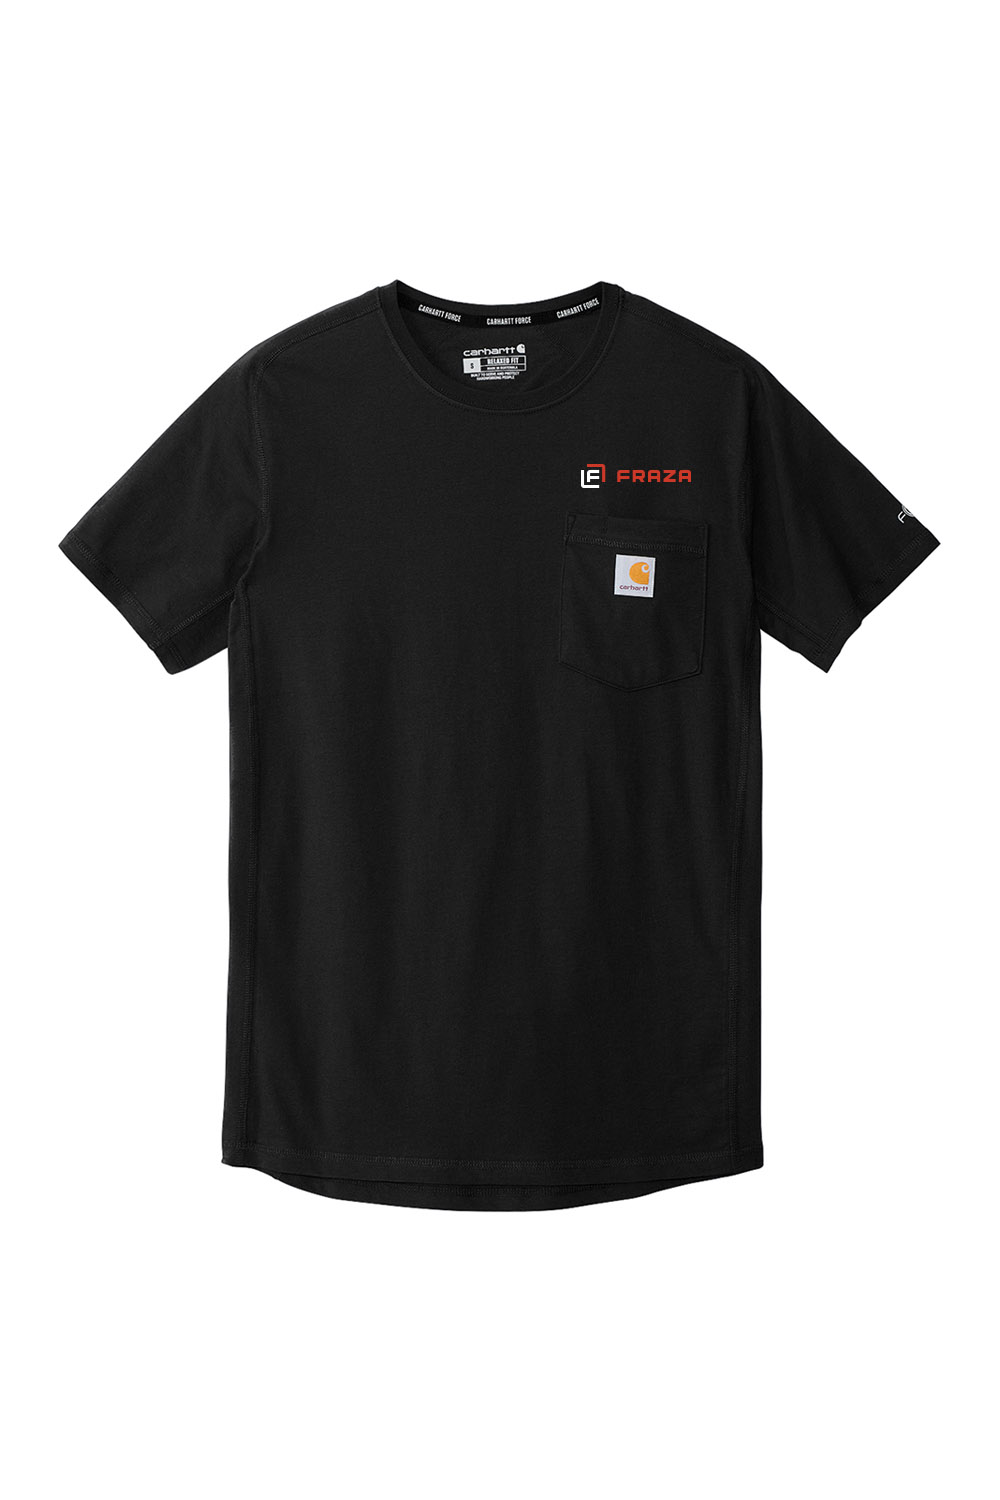 Carhartt Force® Short Sleeve Pocket T-Shirt - Fraza Company Store